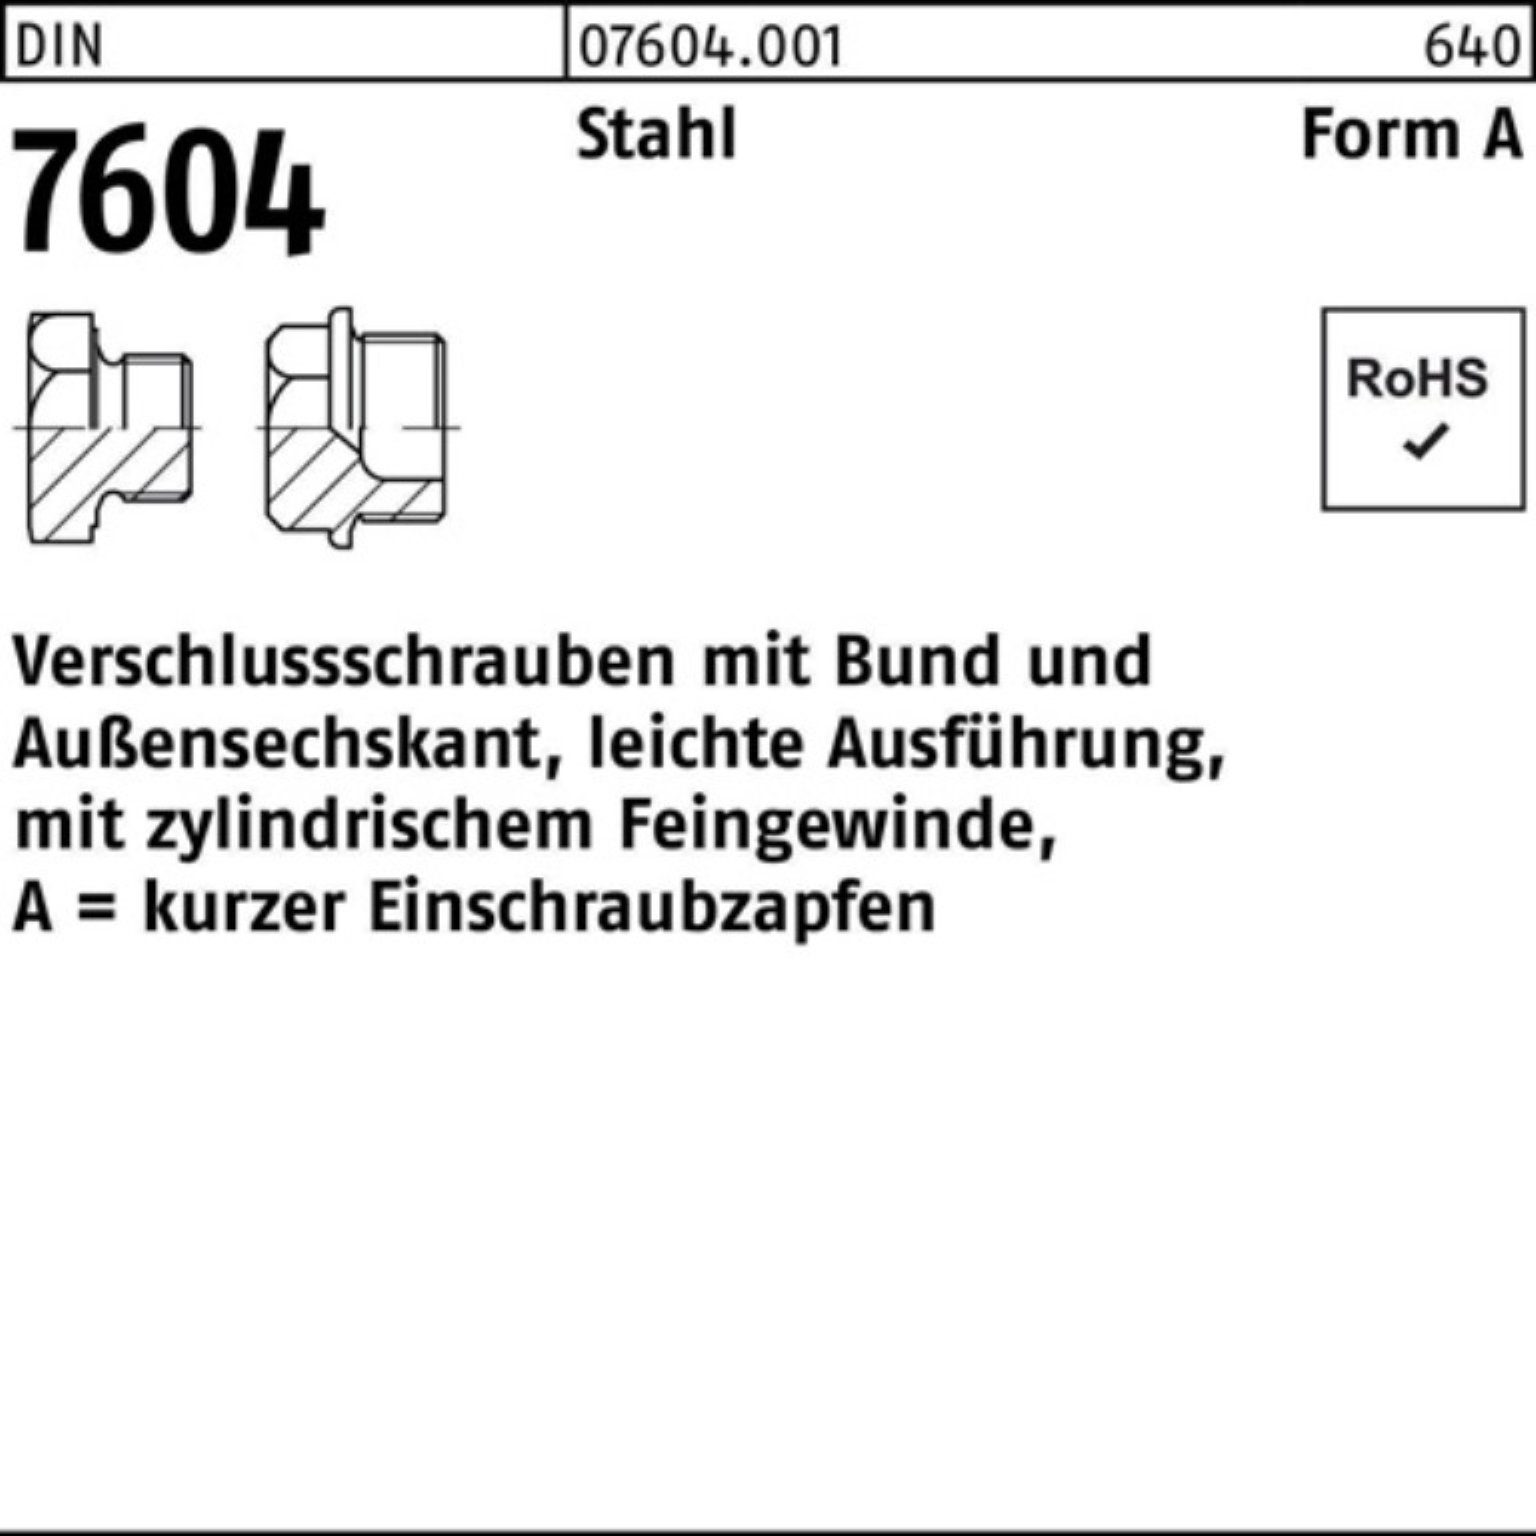 Aktuelle Informationen finden Sie unter Reyher Schraube Bund 26x Pack DIN 25 100er Verschlußschraube AM Stück 7604 Stahl 1,5